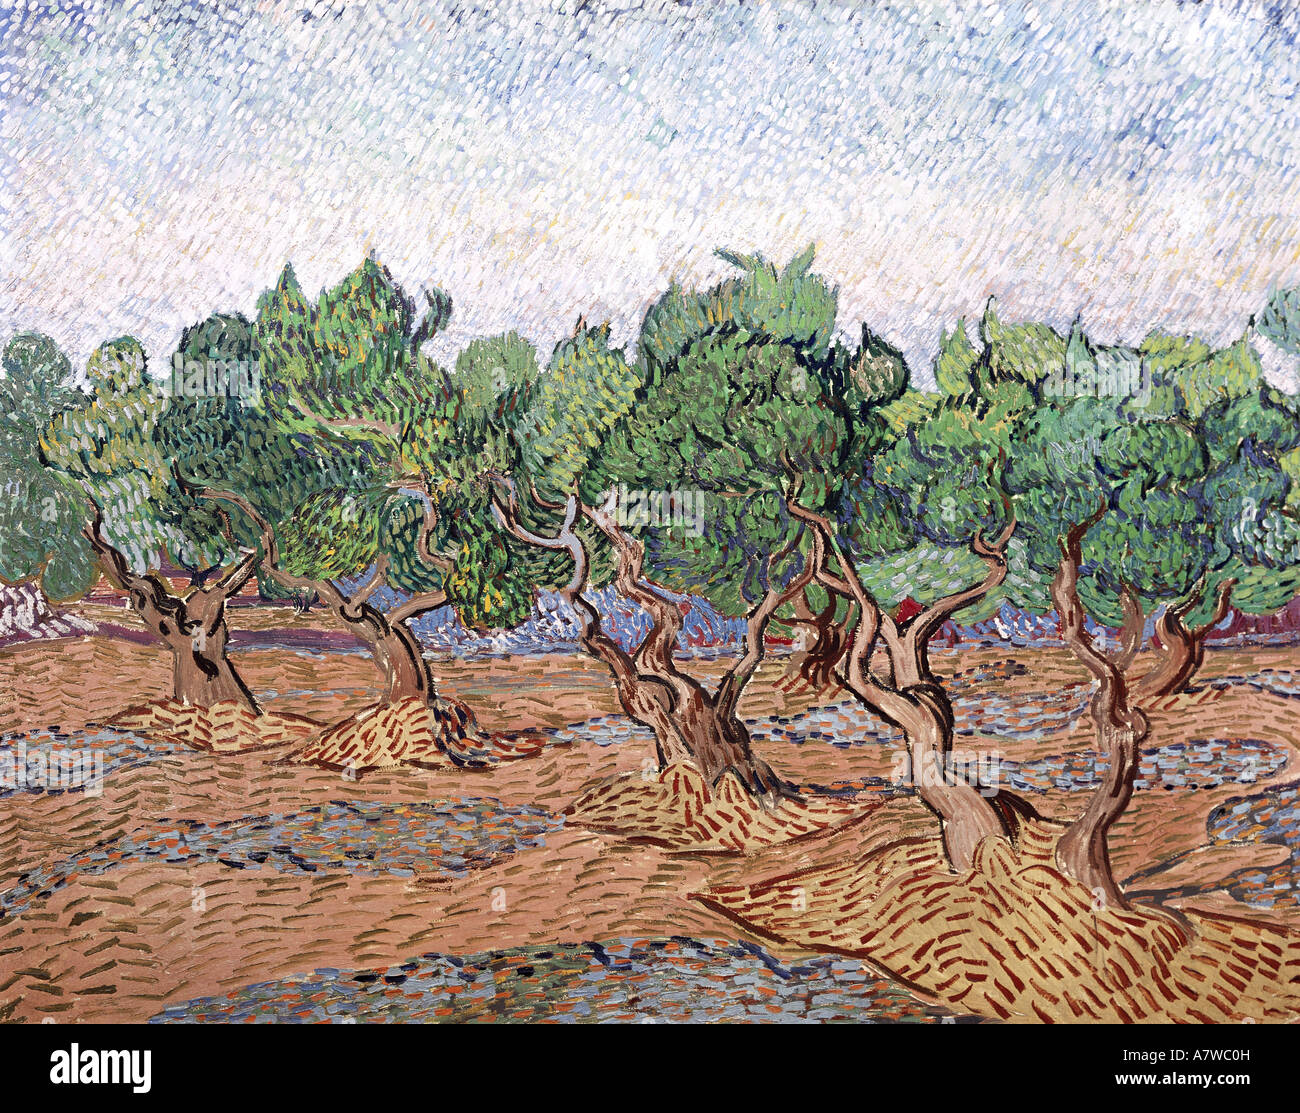 Beaux-arts, Vincent van Gogh (1853 - 1890), d'oliviers, ciel rose, peinture, Saint Remy, 1889 huile sur toile, 730 x 925 cm Rijksmuseum, Van Gogh, Amsterdam, , n'a pas d'auteur de l'artiste pour être effacé Banque D'Images